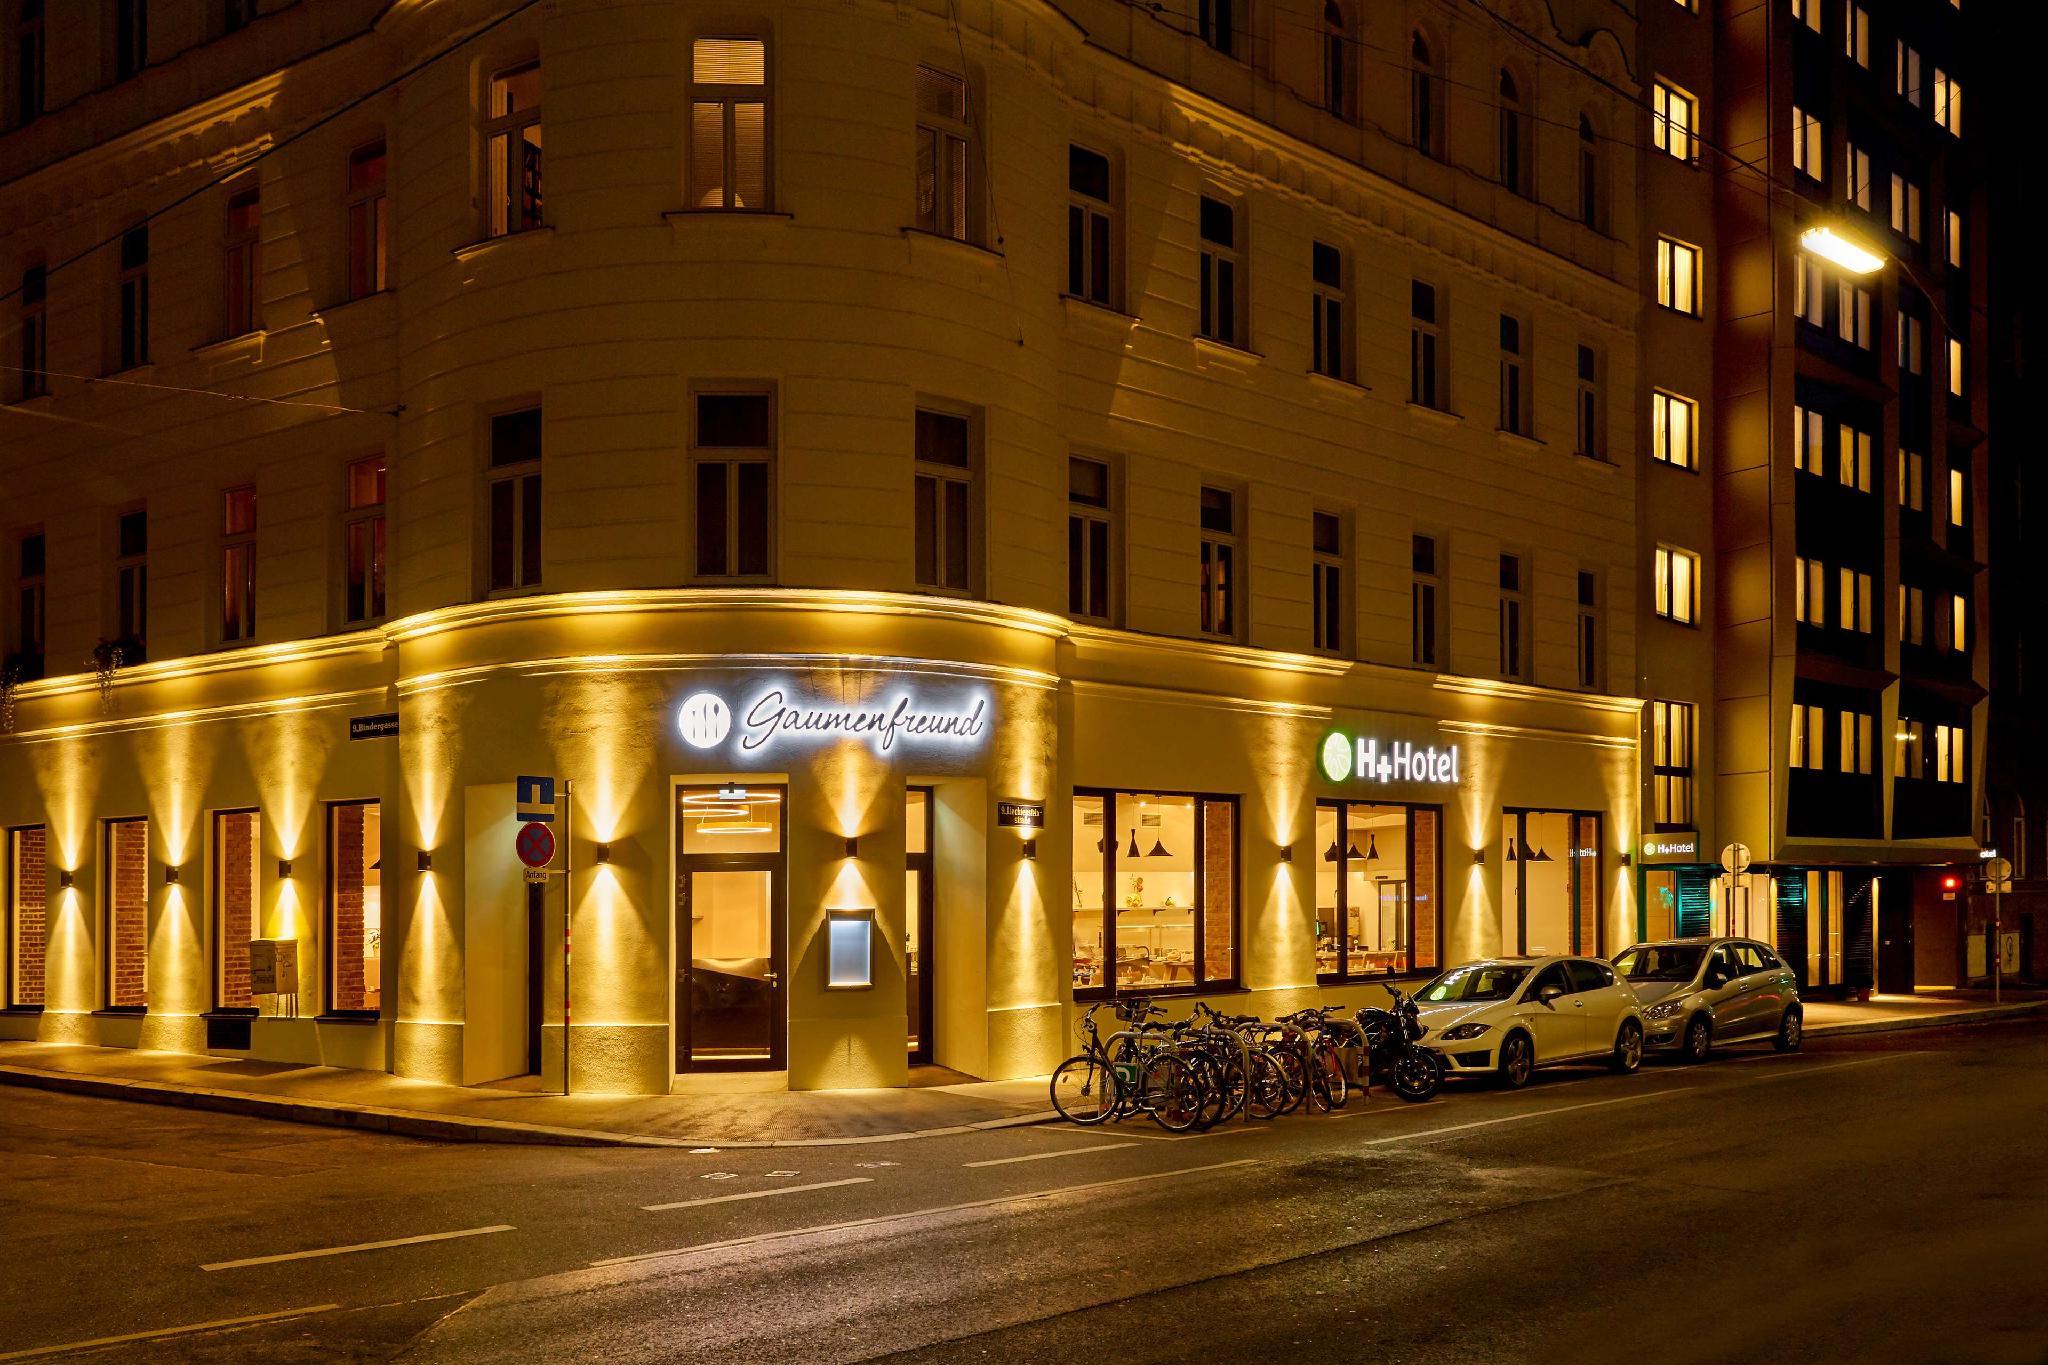 H+ Hotel Wien 写真